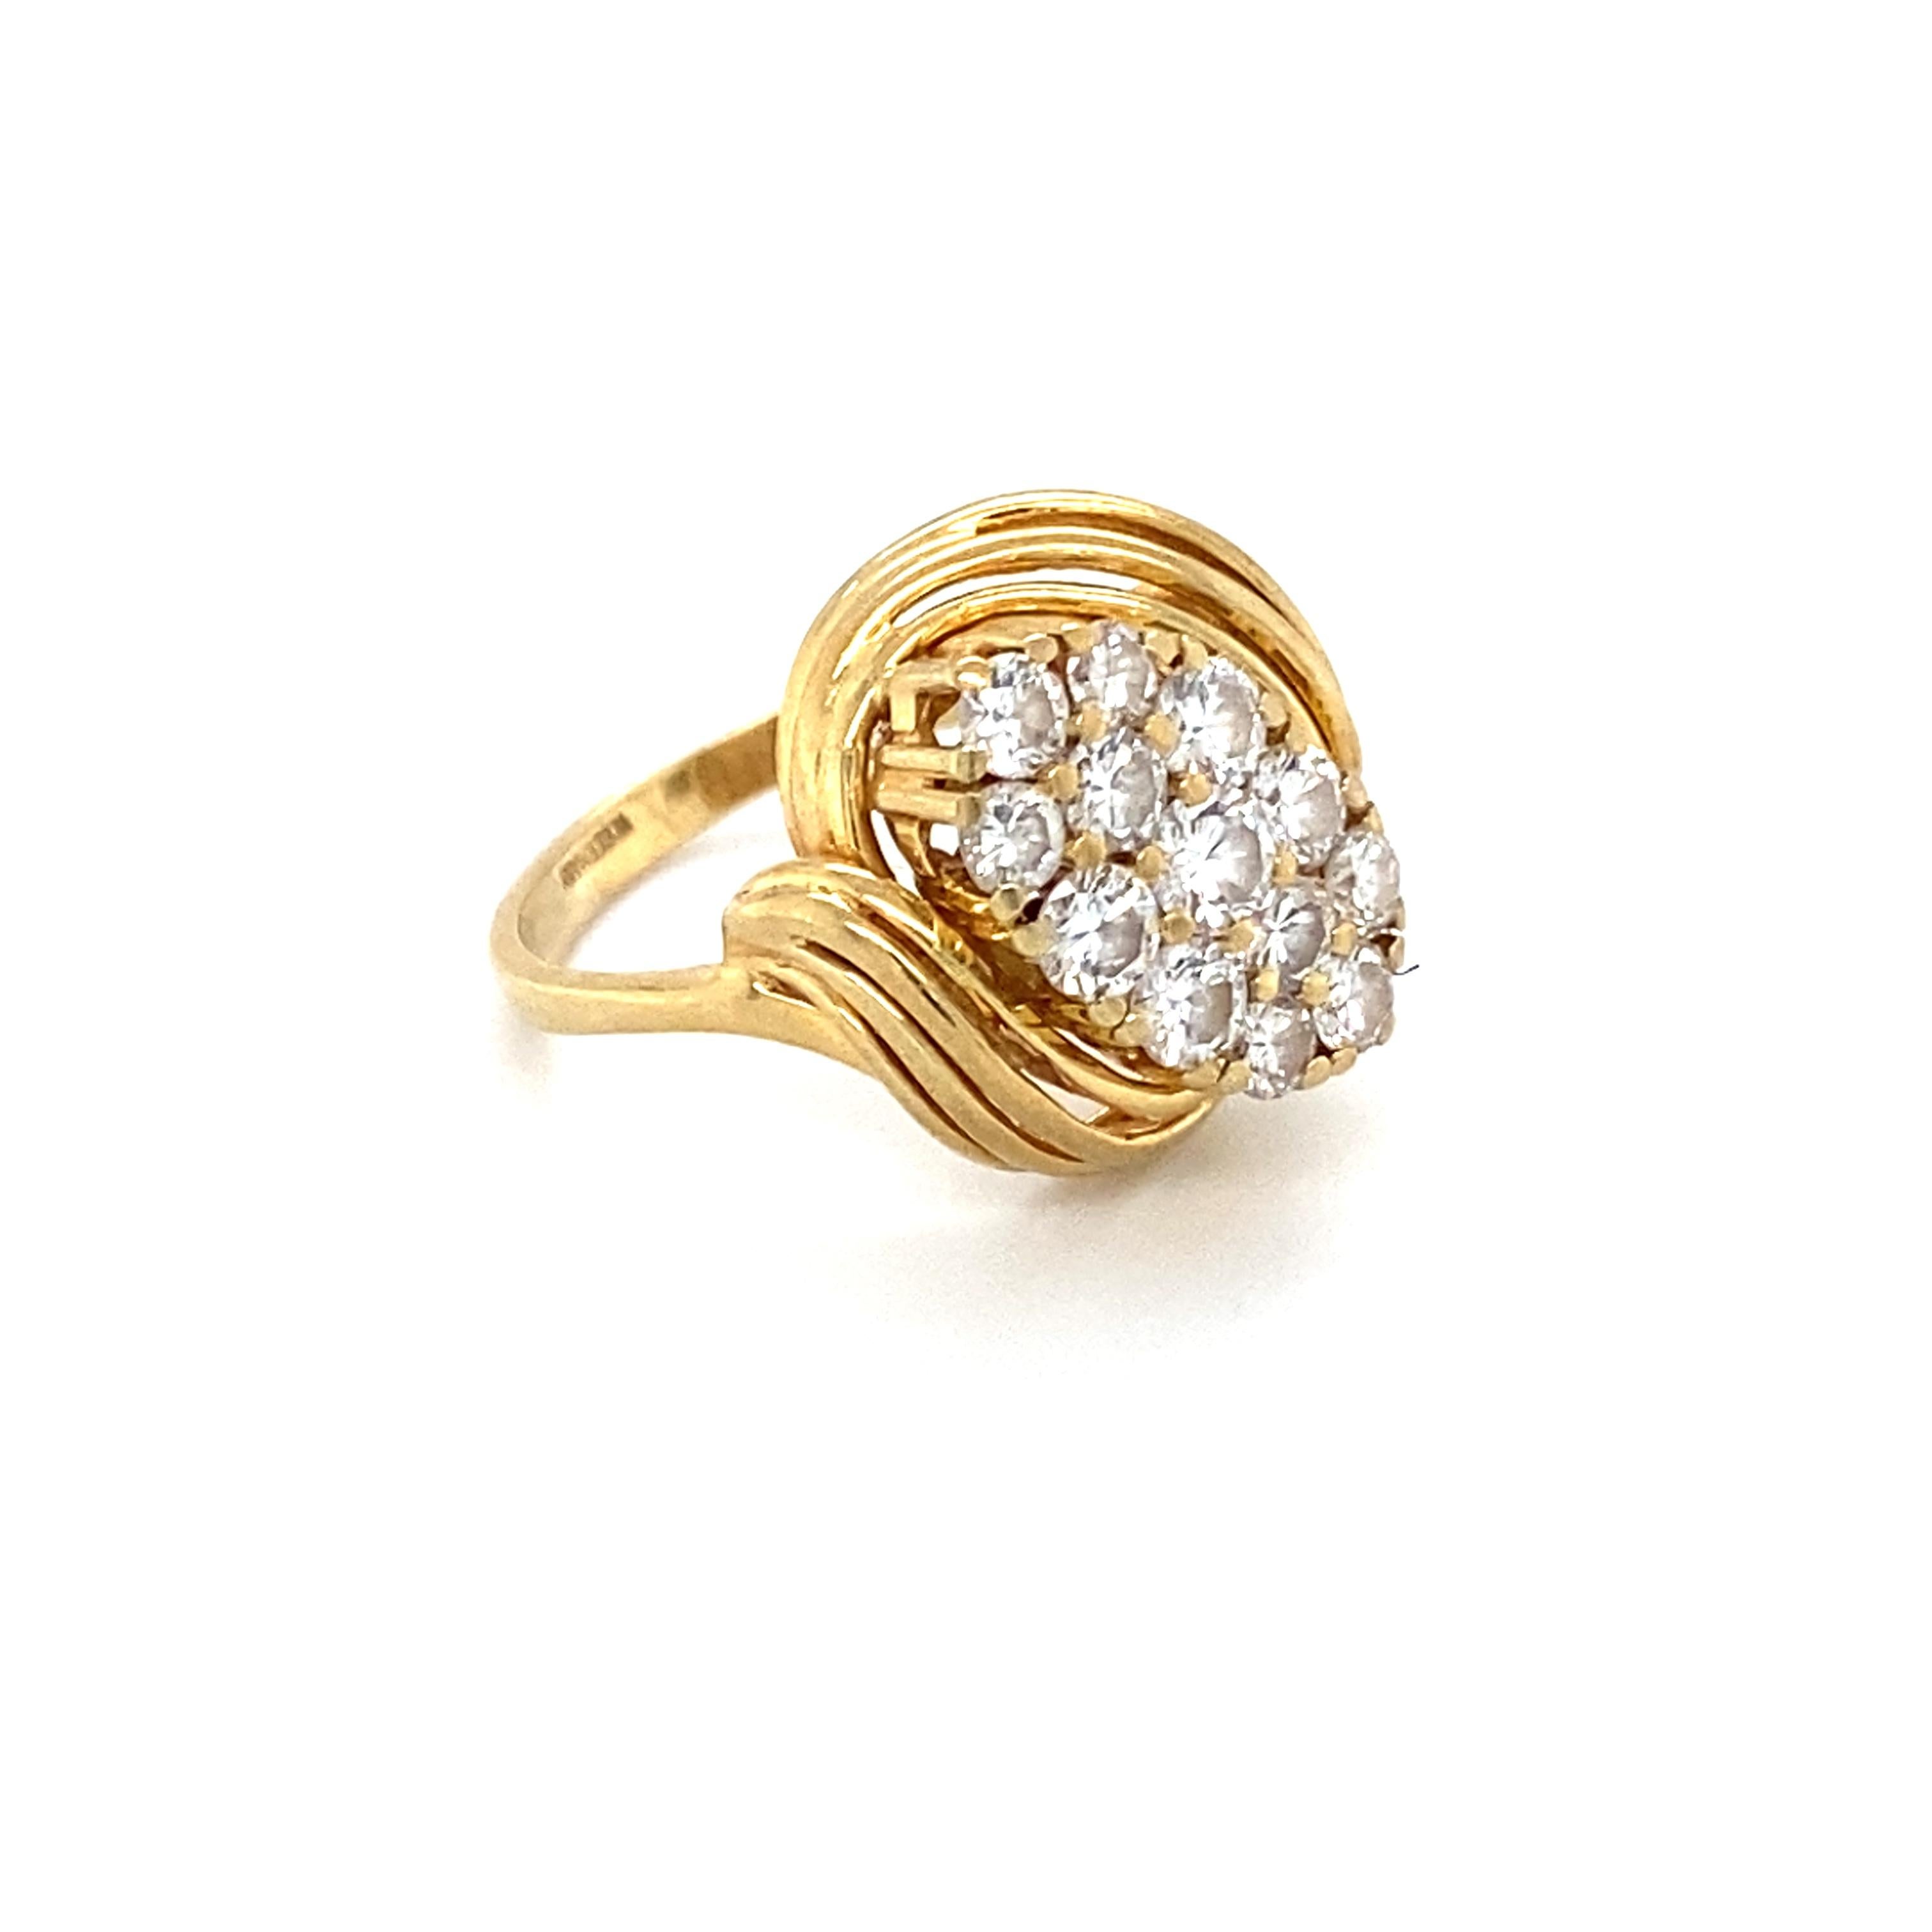 Modern 1980s 0.60 Carat Diamond Ring in 14 Karat Yellow Gold